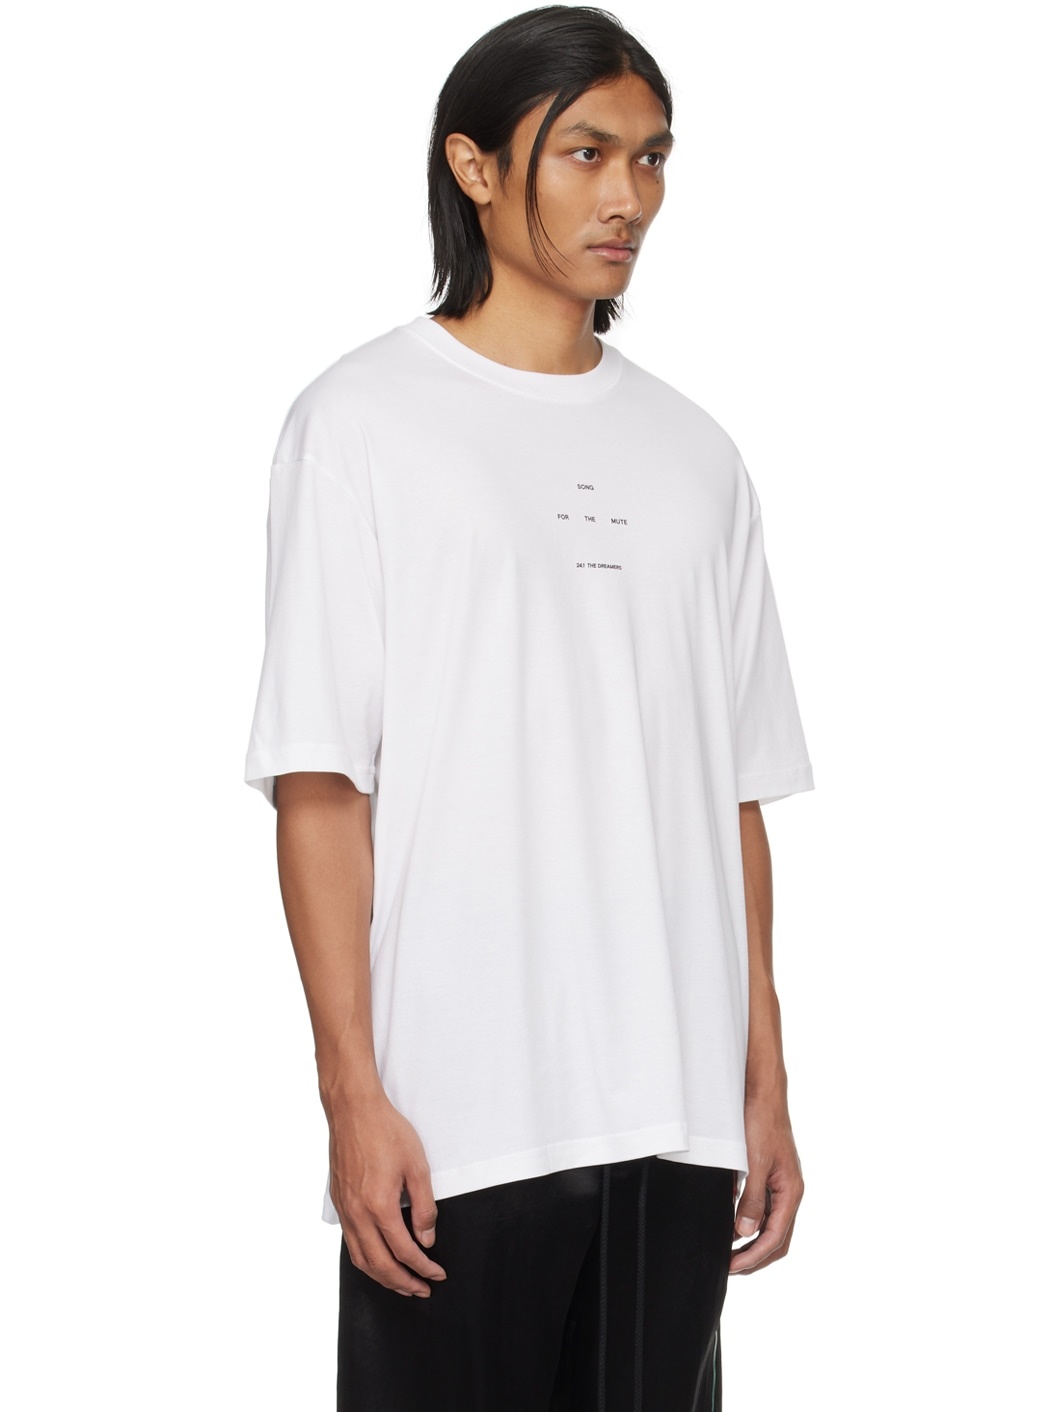 White Graphic T-Shirt - 2